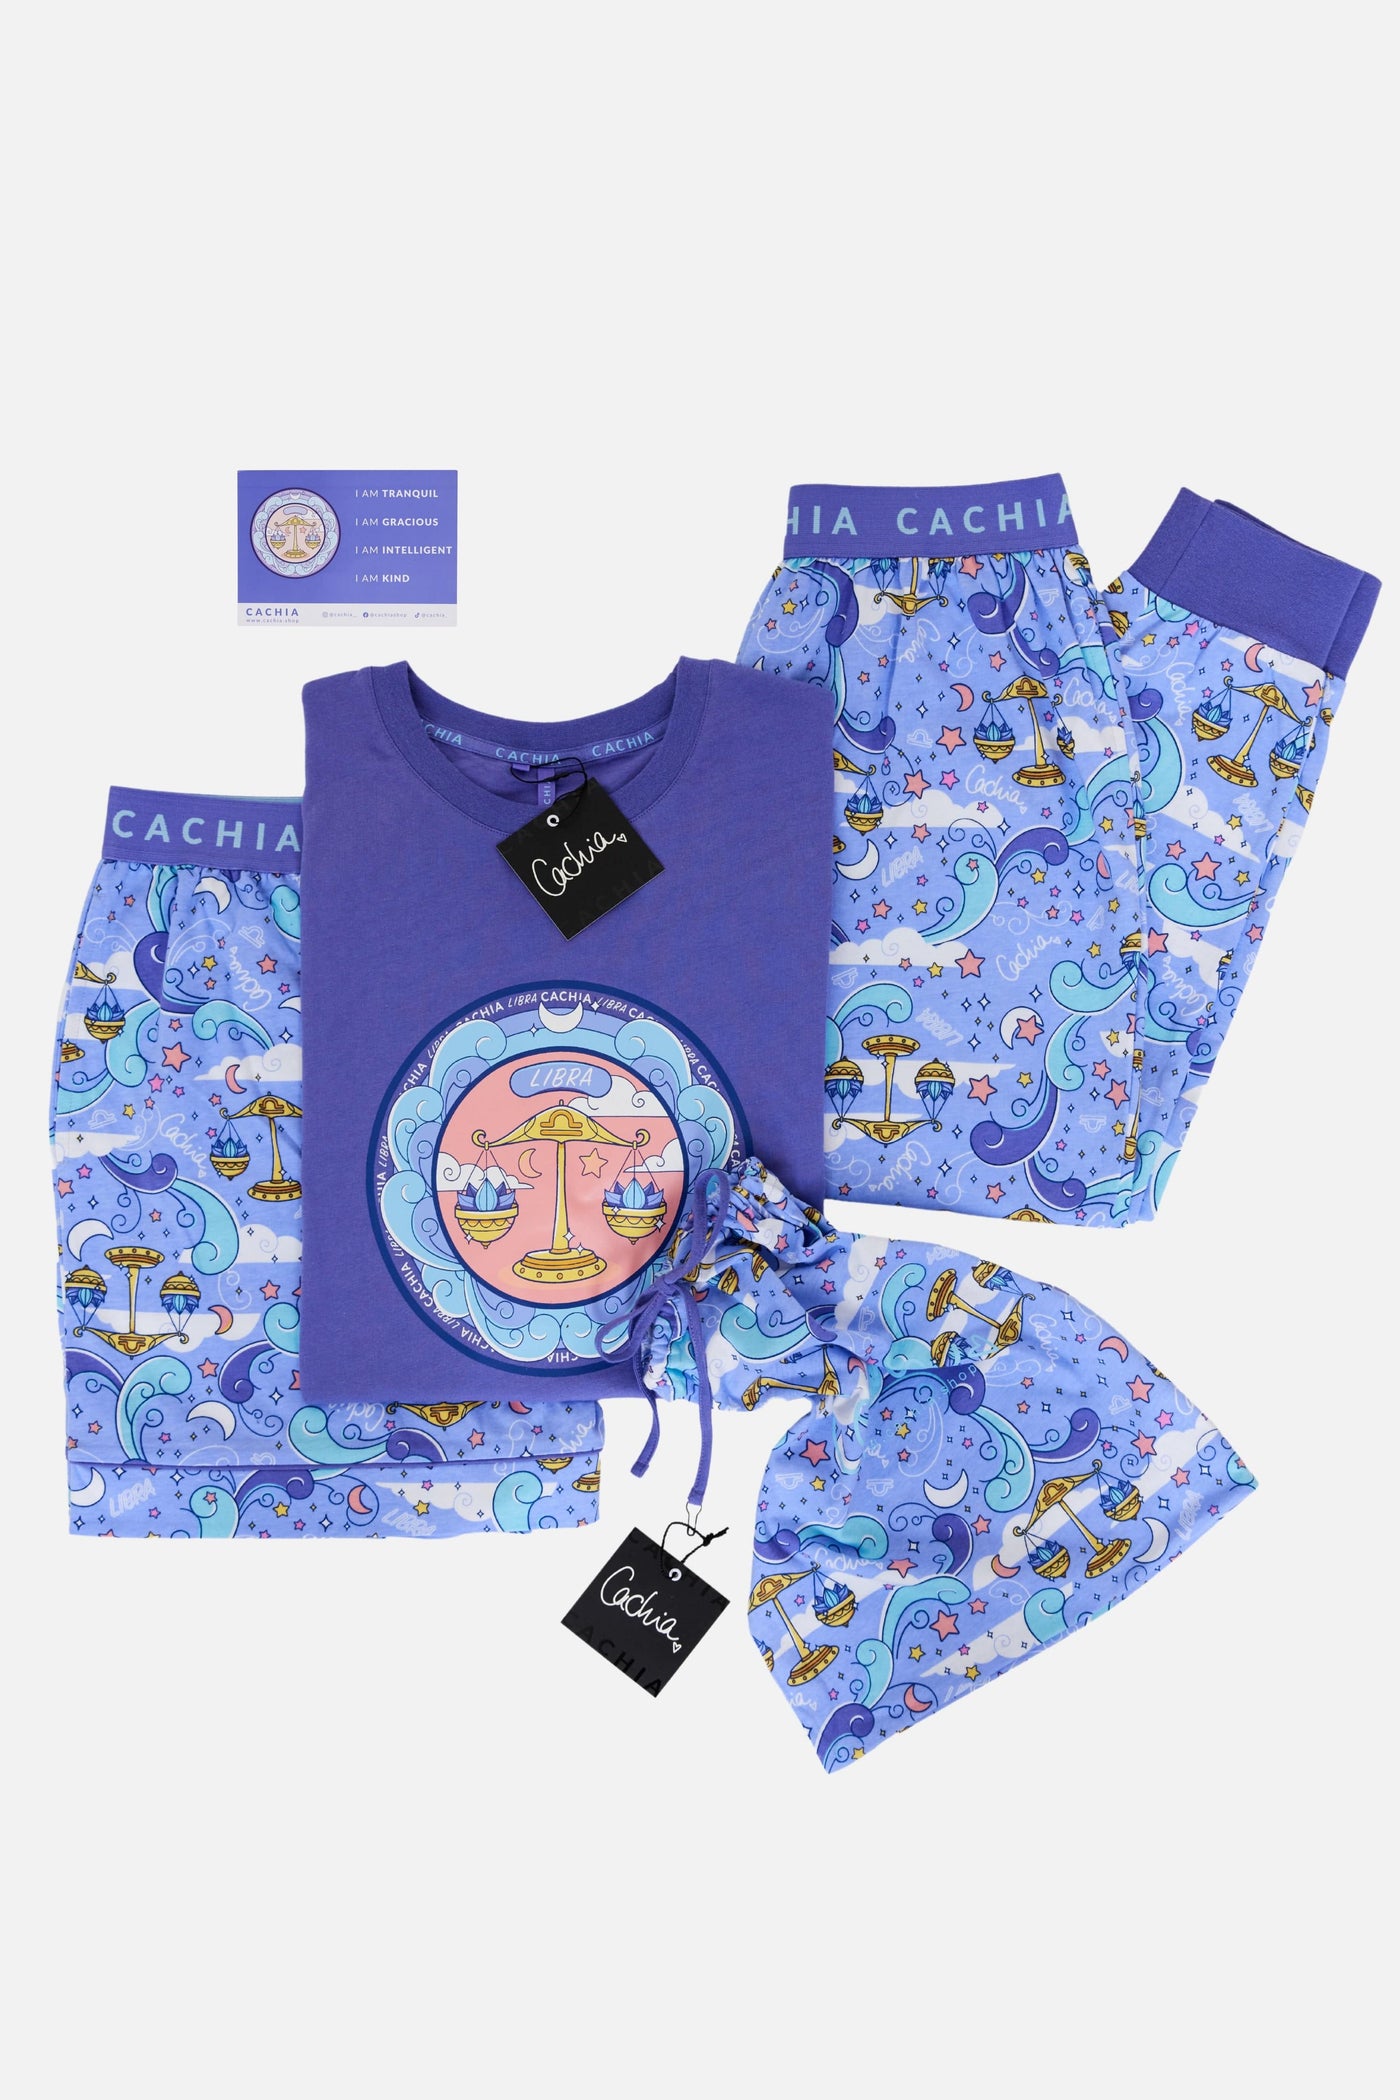 Cachia Libra - Zodiac Pyjama Bundle Pajamas